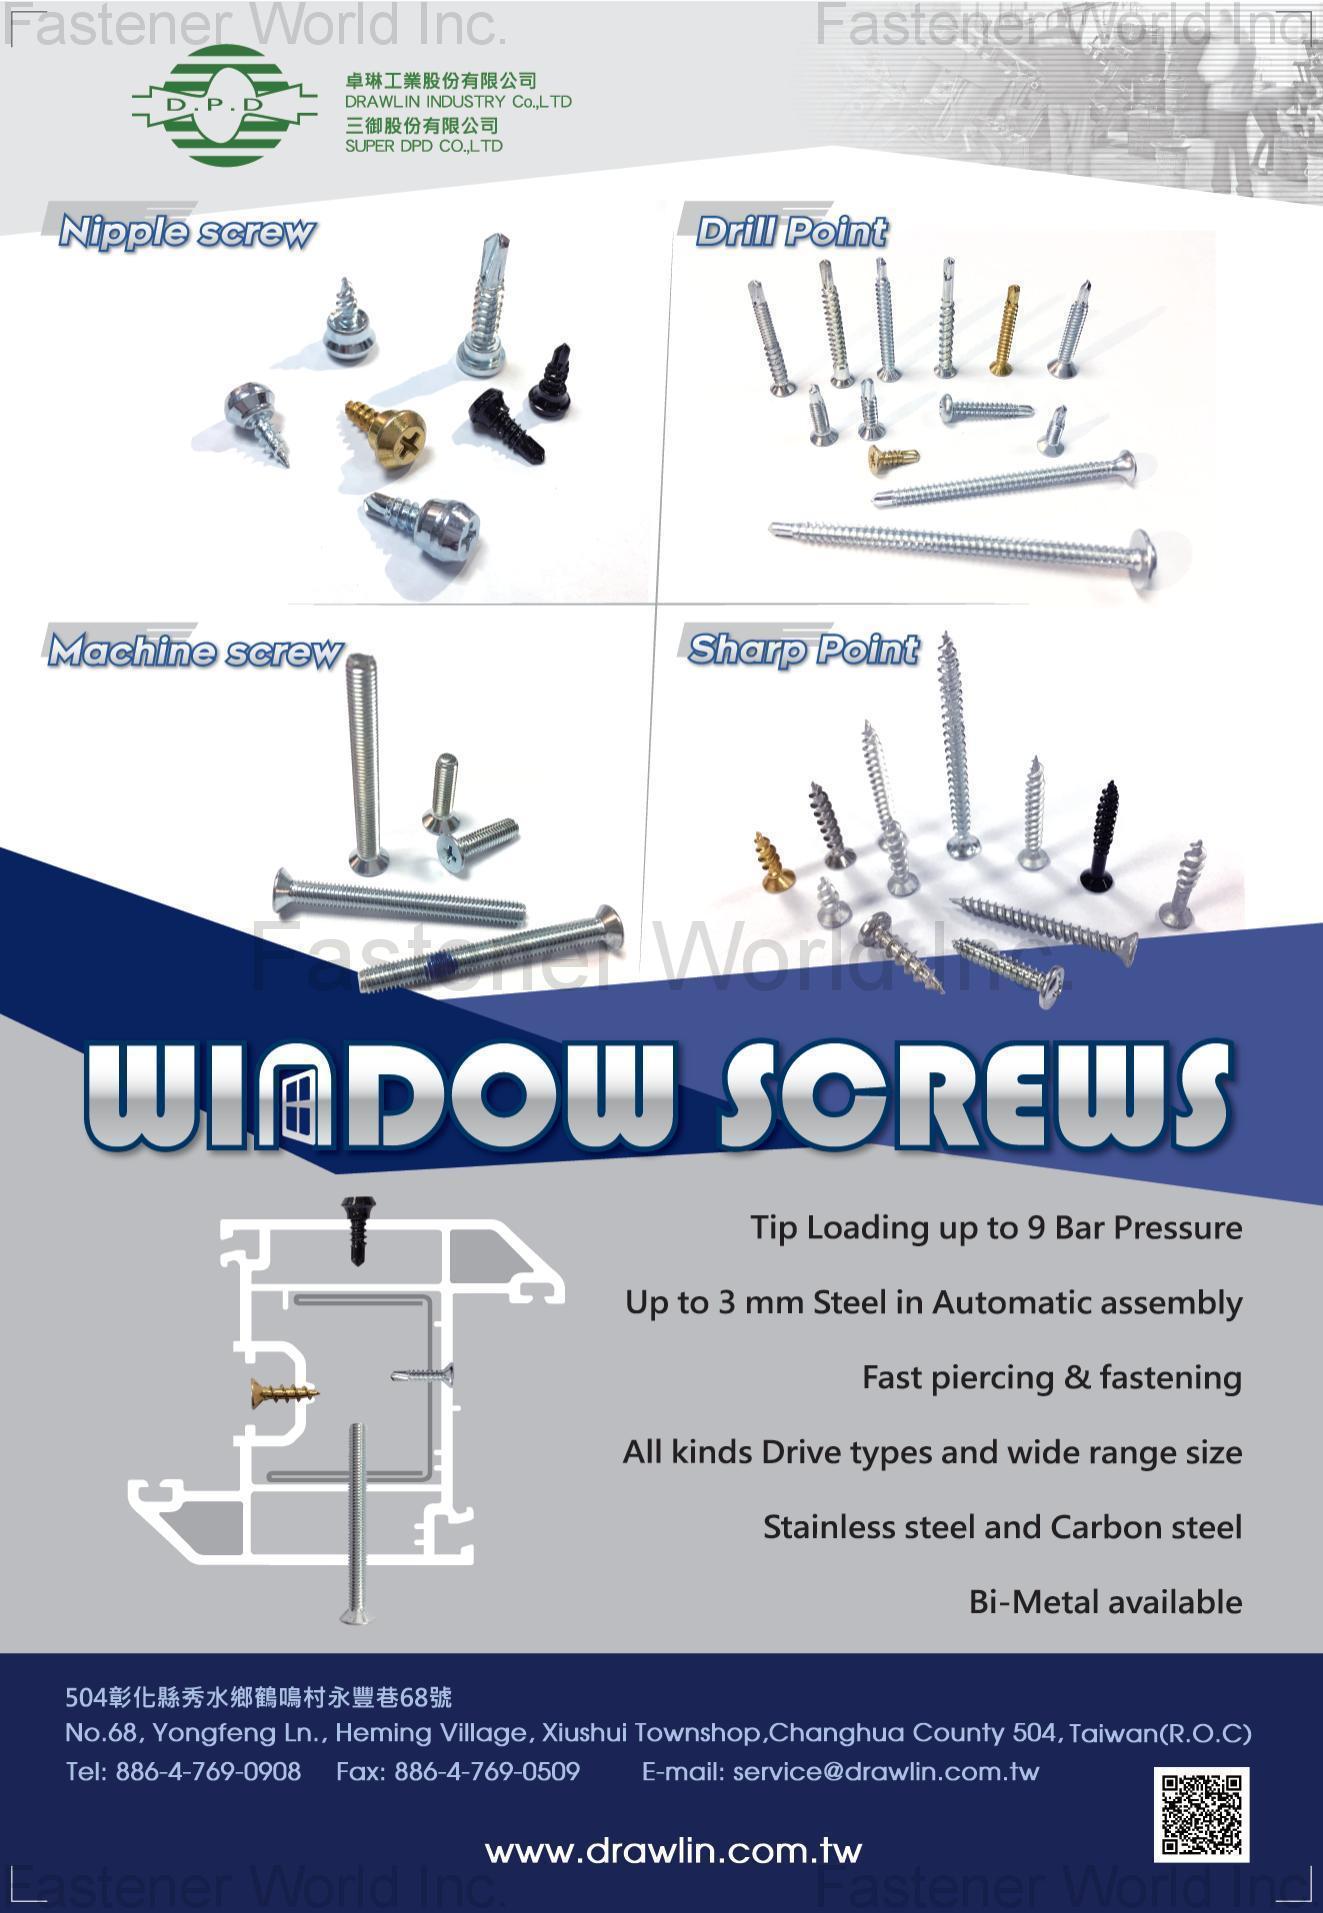 SUPER DPD CO., LTD. , Nipple Screw, Machine Screw, Drill Point, Sharp Point , PVC Screws